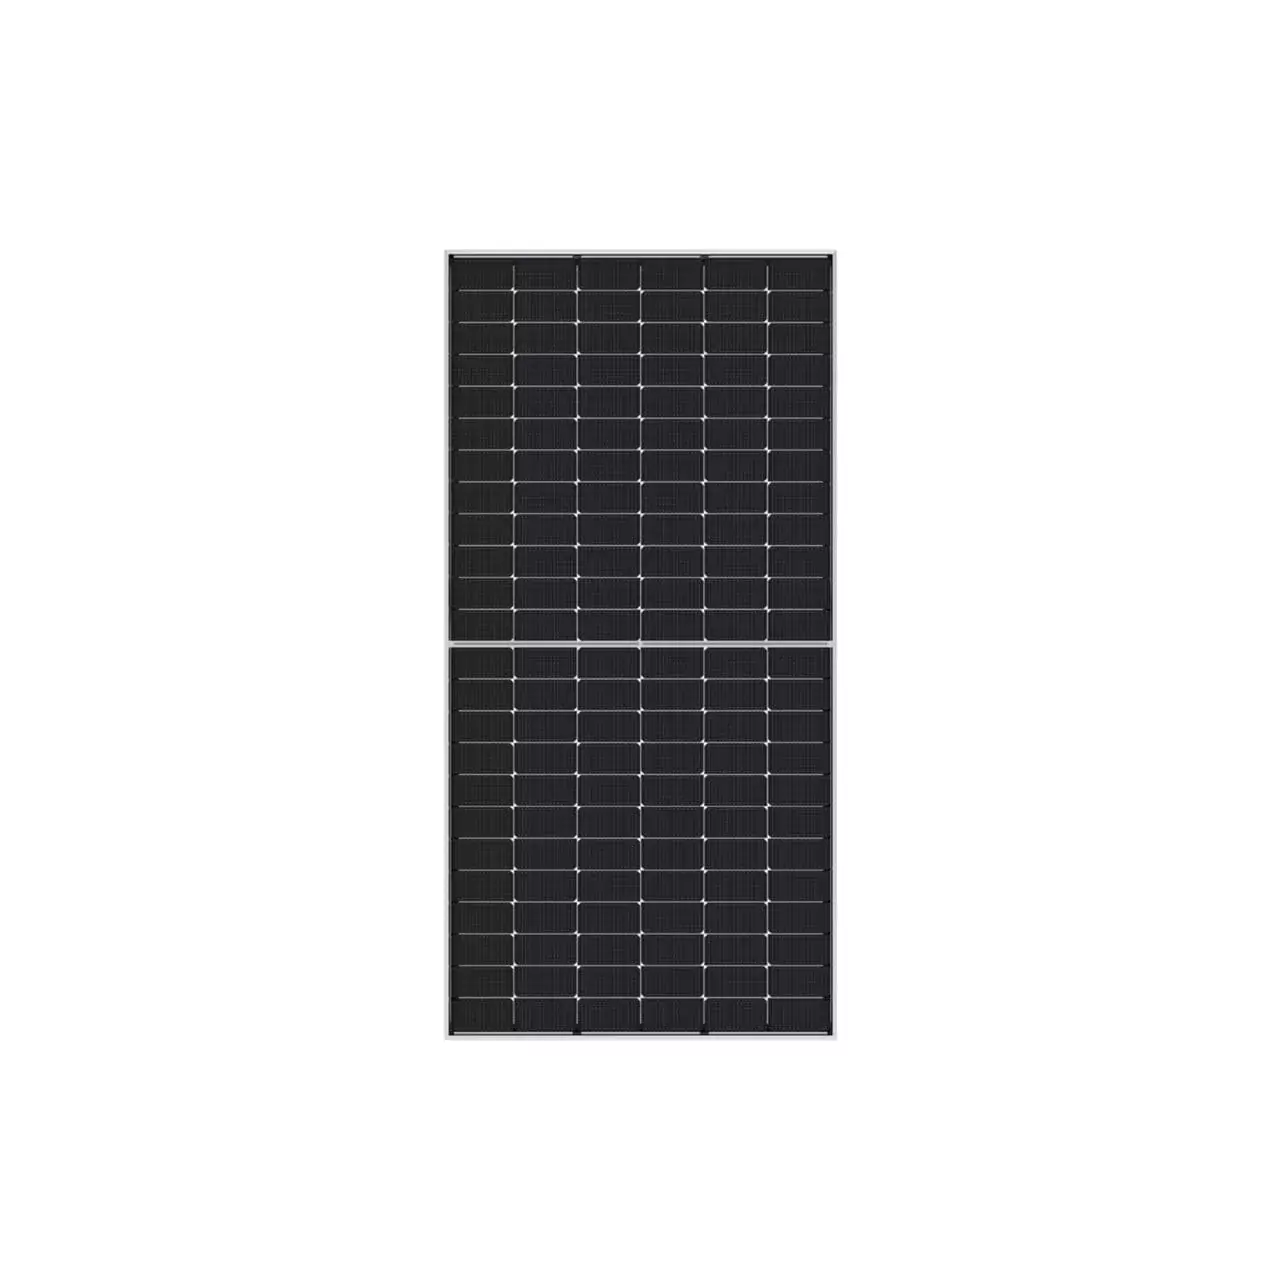 Doppel Draht Eintrag Drüse Box Solar Panel Dach Draht Eintrag